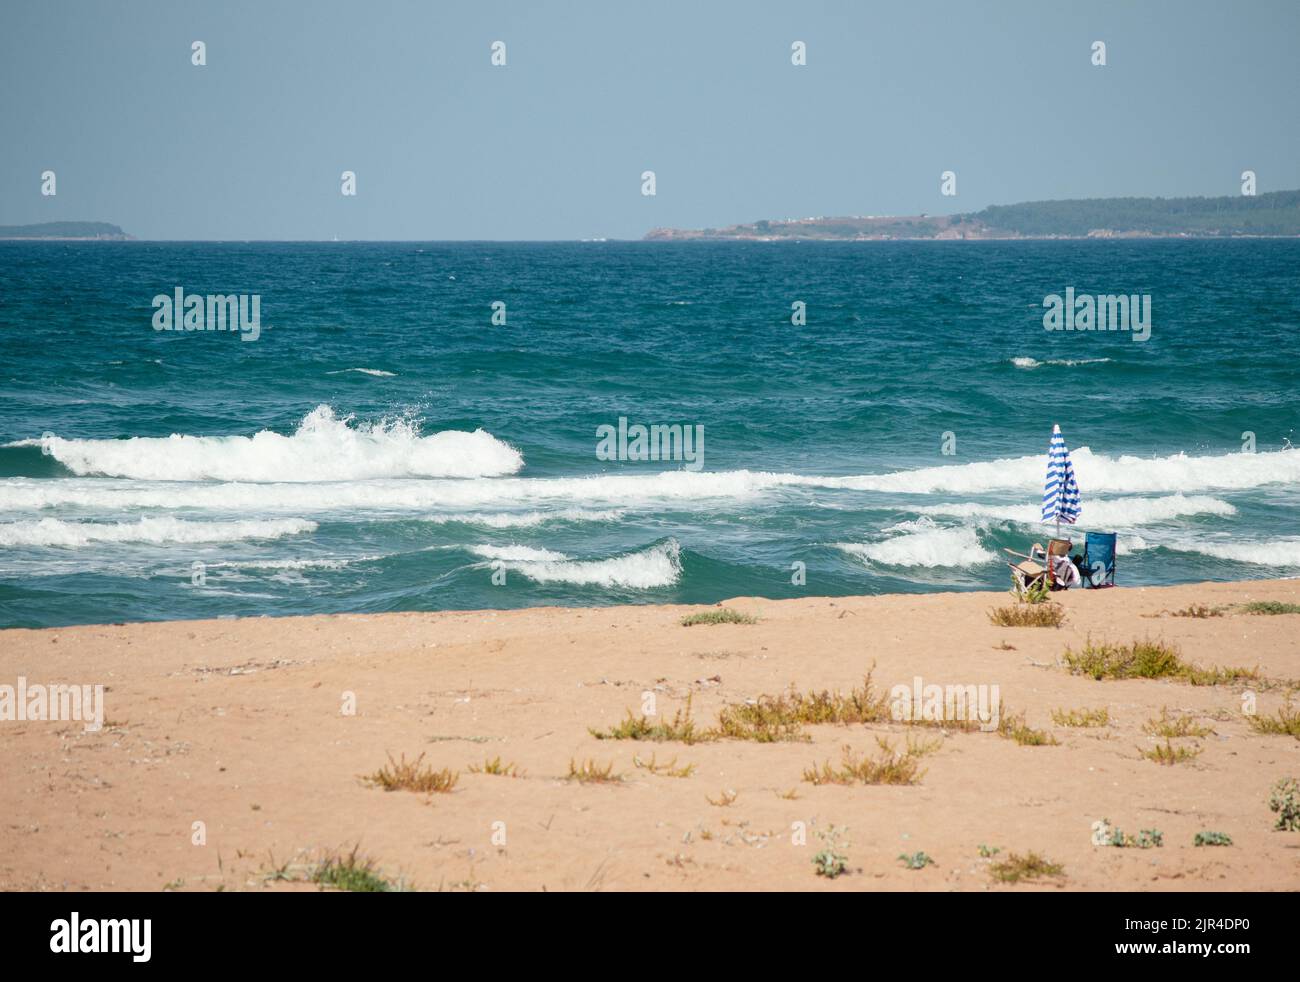 Sonnenschirm und zwei Campingliegen an einem einsamen Strand. Das Wellenmeer spült an Land. Entspannungsbereich abseits der Menschen. Sommer vibes Idee Konzept. Stockfoto